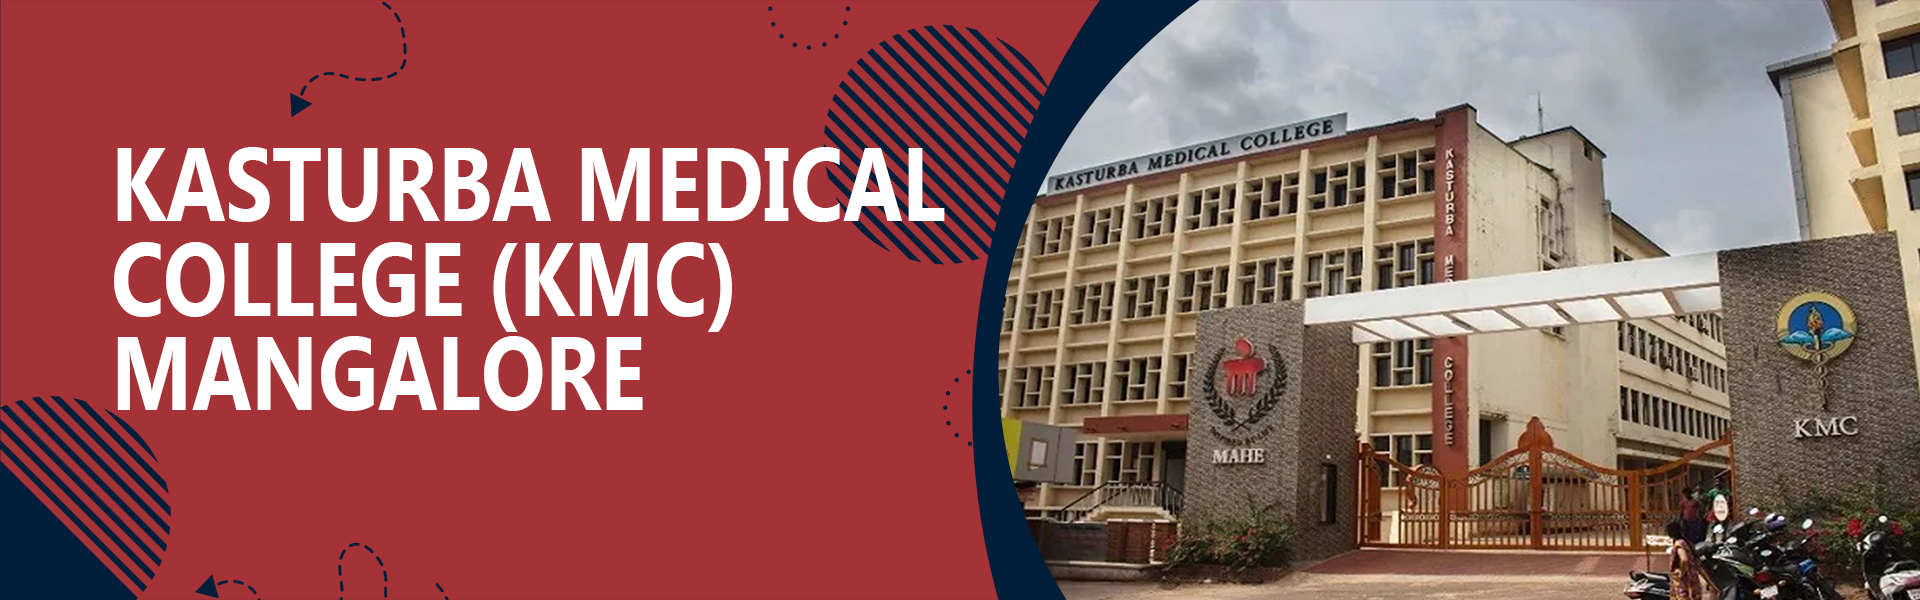 Kasturba Medical College (KMC)